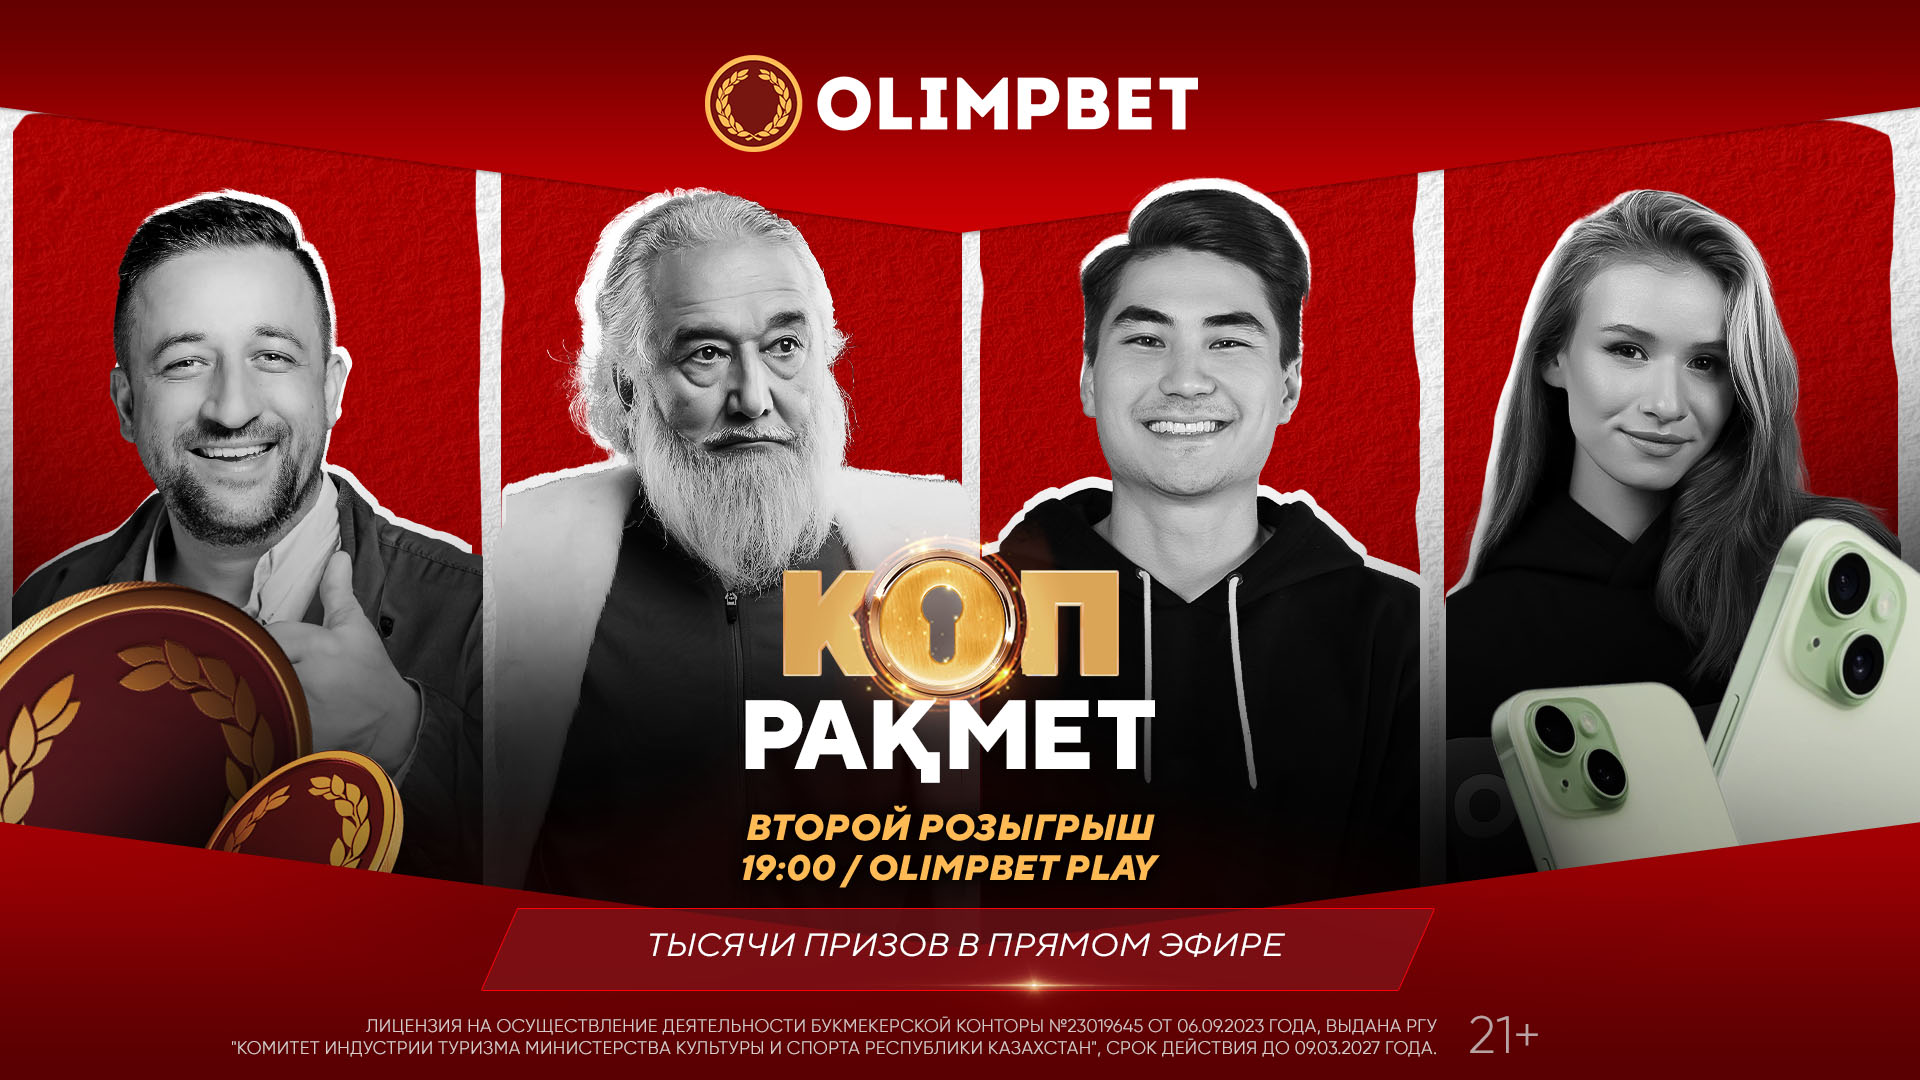 Olimpbet разыгрывает очередные призы в акции «Коп ракмет» 13 декабря